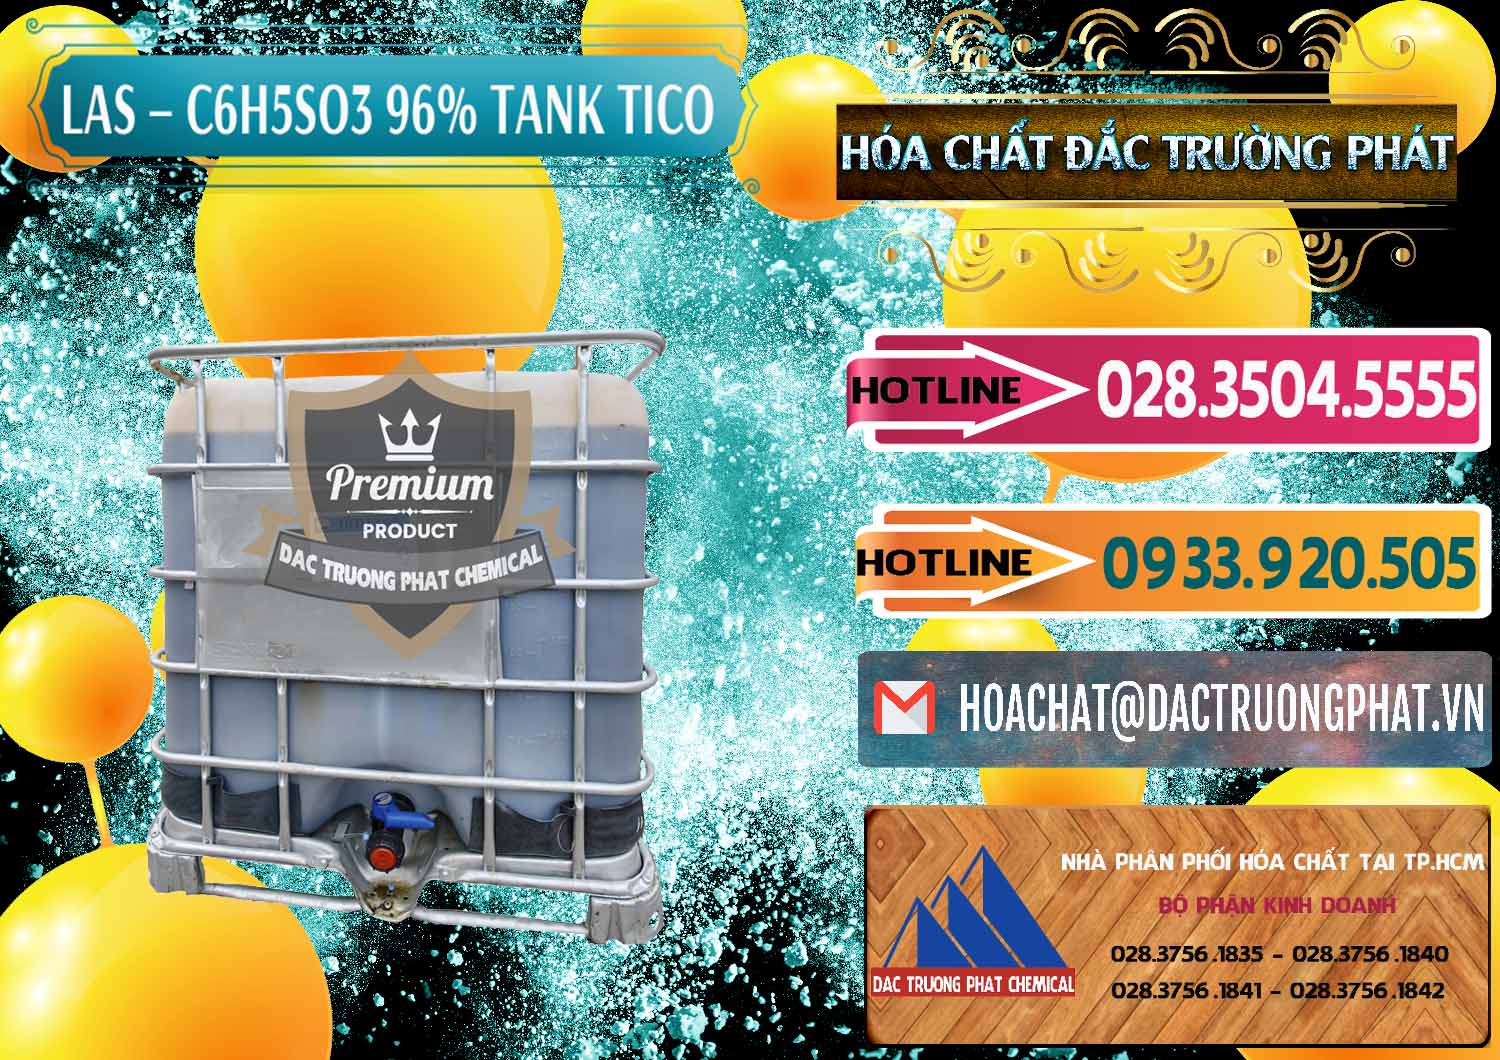 Nơi chuyên phân phối & bán Chất tạo bọt Las P Tico Tank IBC Bồn Việt Nam - 0488 - Cty chuyên cung cấp - kinh doanh hóa chất tại TP.HCM - dactruongphat.vn